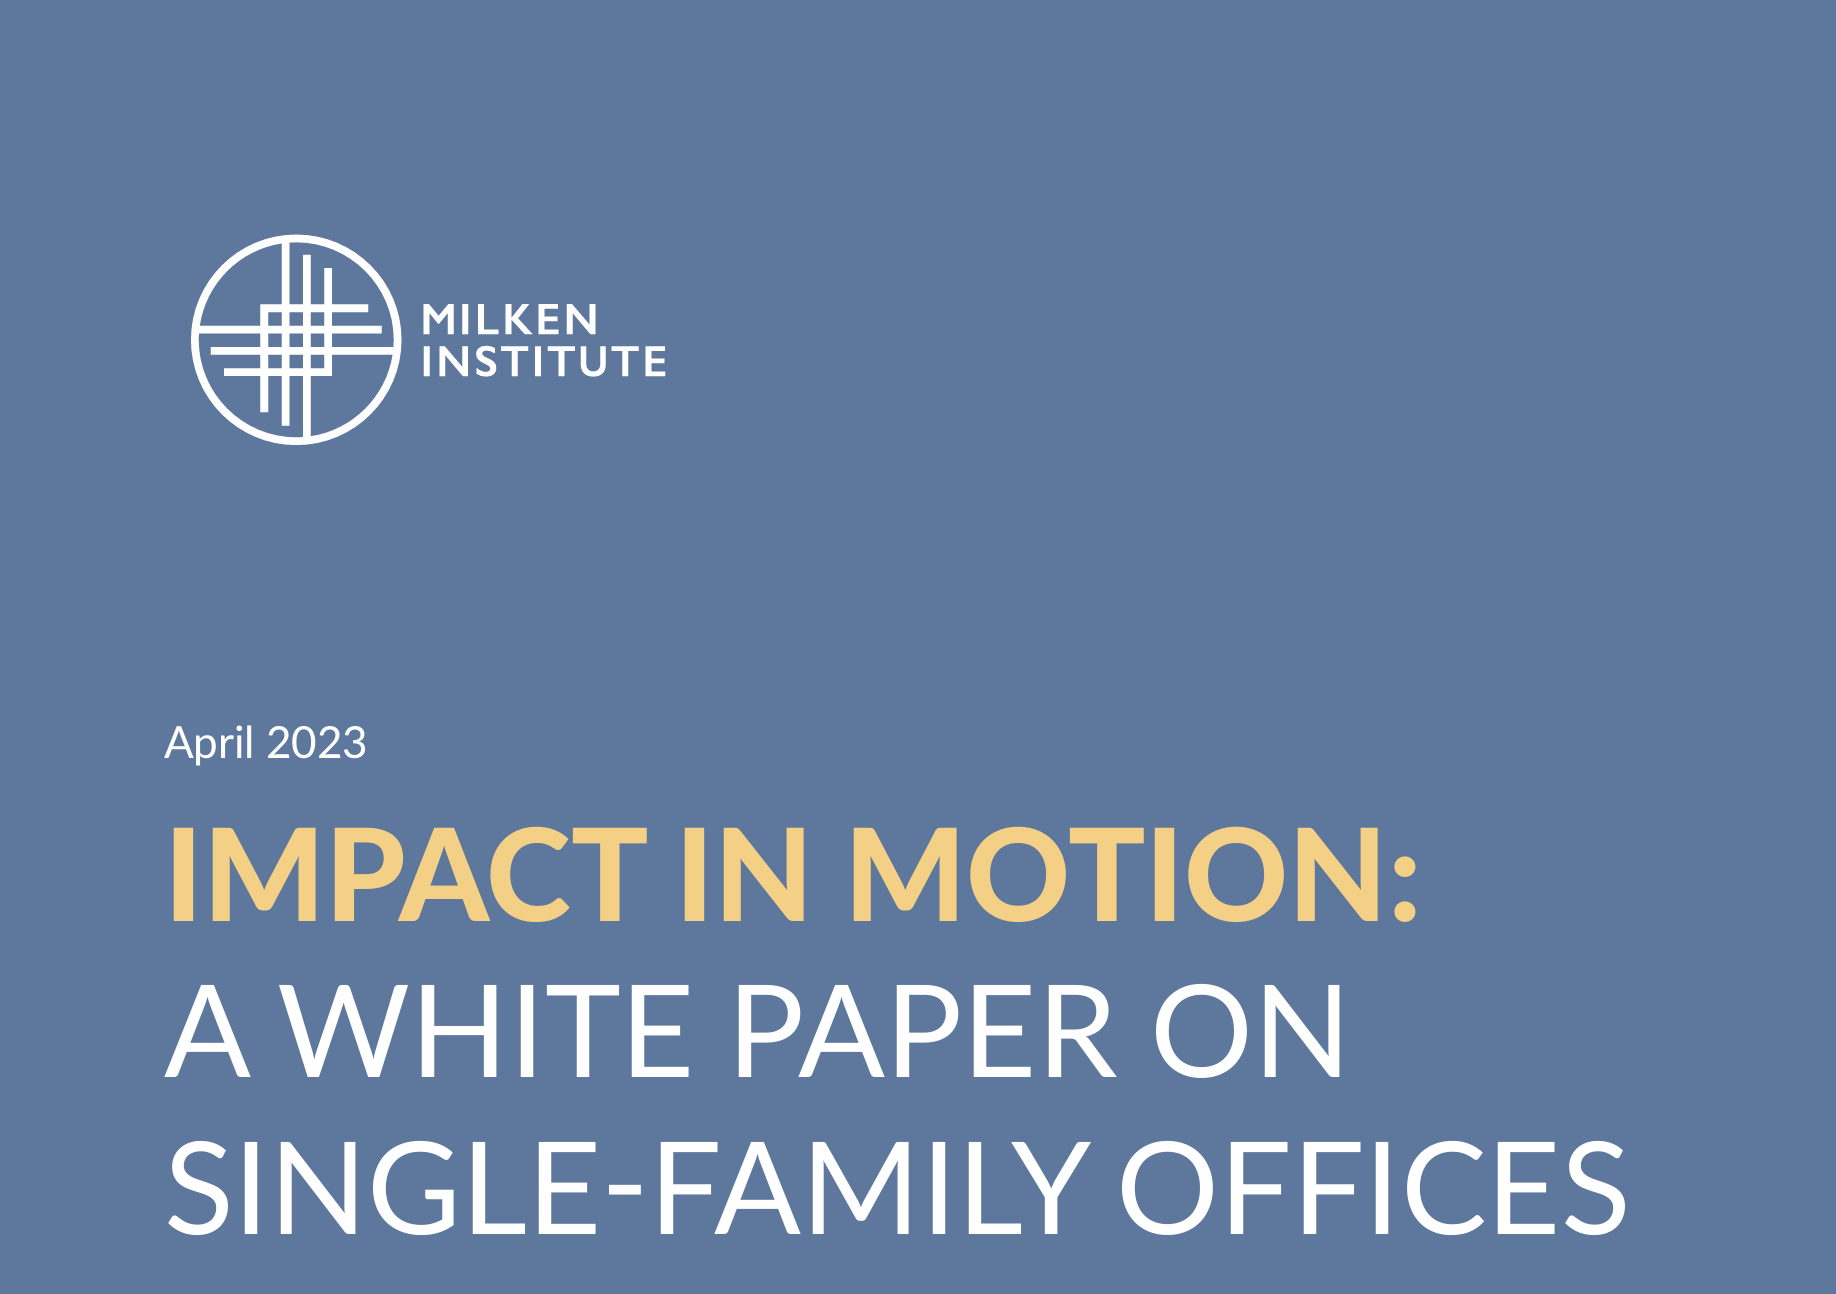 Milken Institute White Paper on Single-family Offices